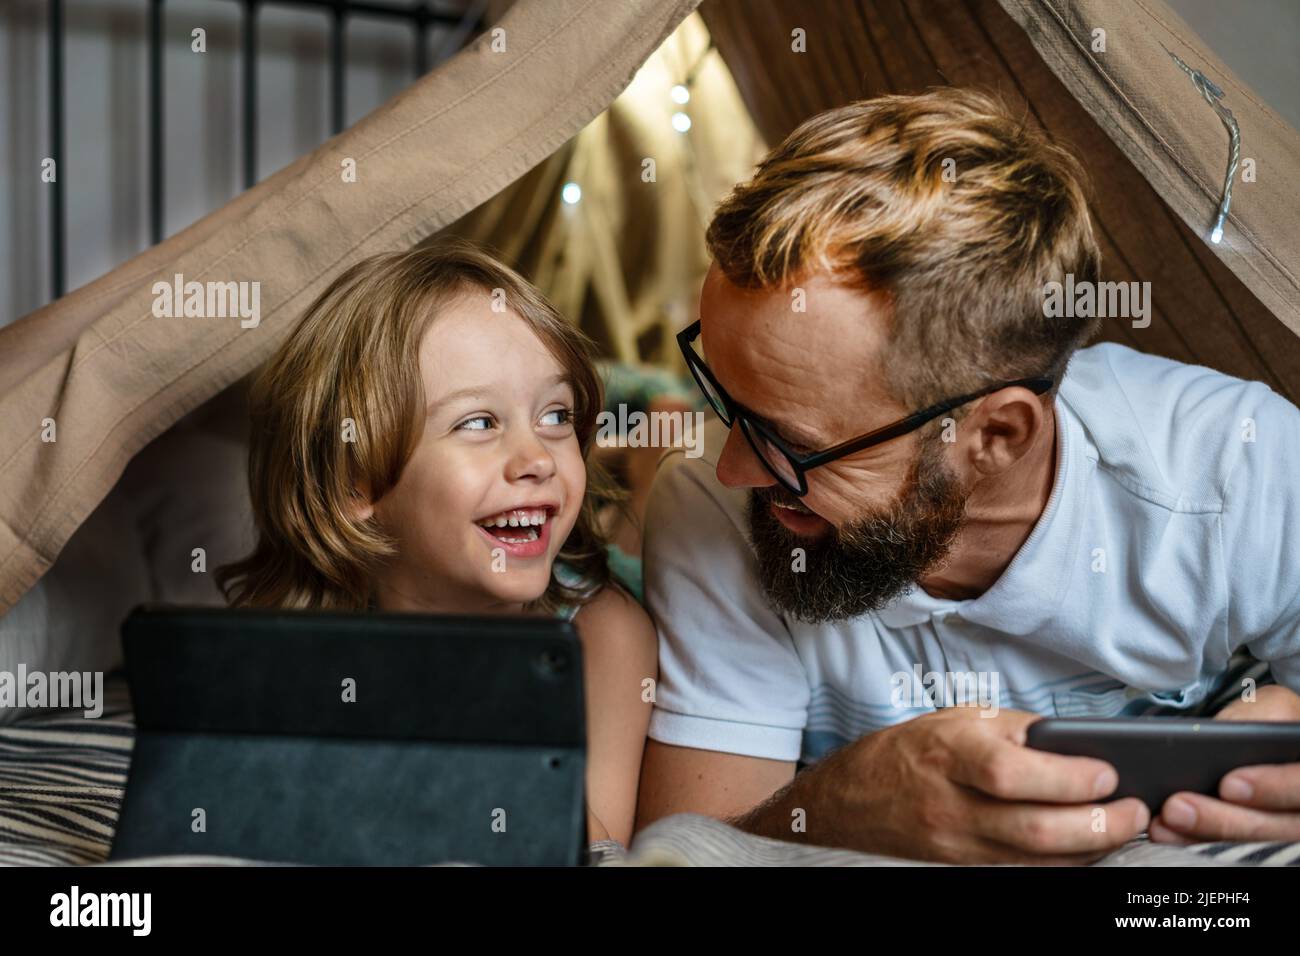 Portrait d'un garçon de 6 ans et de son père qui s'amusent à jouer dans une tente à tipi. Père et fils utilisant une tablette numérique pour regarder des dessins animés ou jouer à des jeux informatiques dans une tente pour enfants à la maison. Banque D'Images